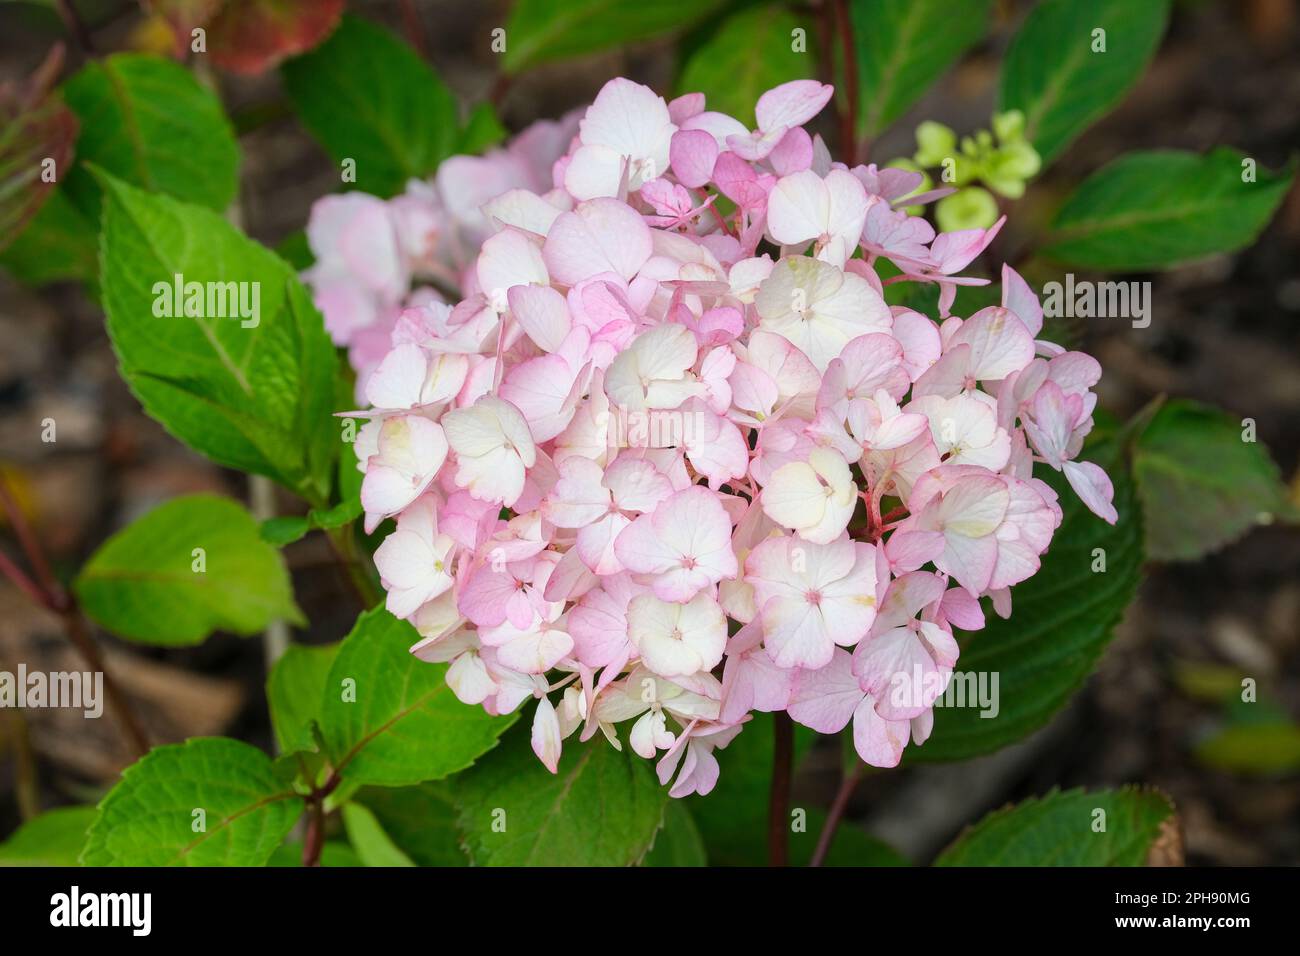 Hydrangea Preziosa, Hydrangea serrata Preziosa, clusters of rose-pink sterile flowers, Stock Photo